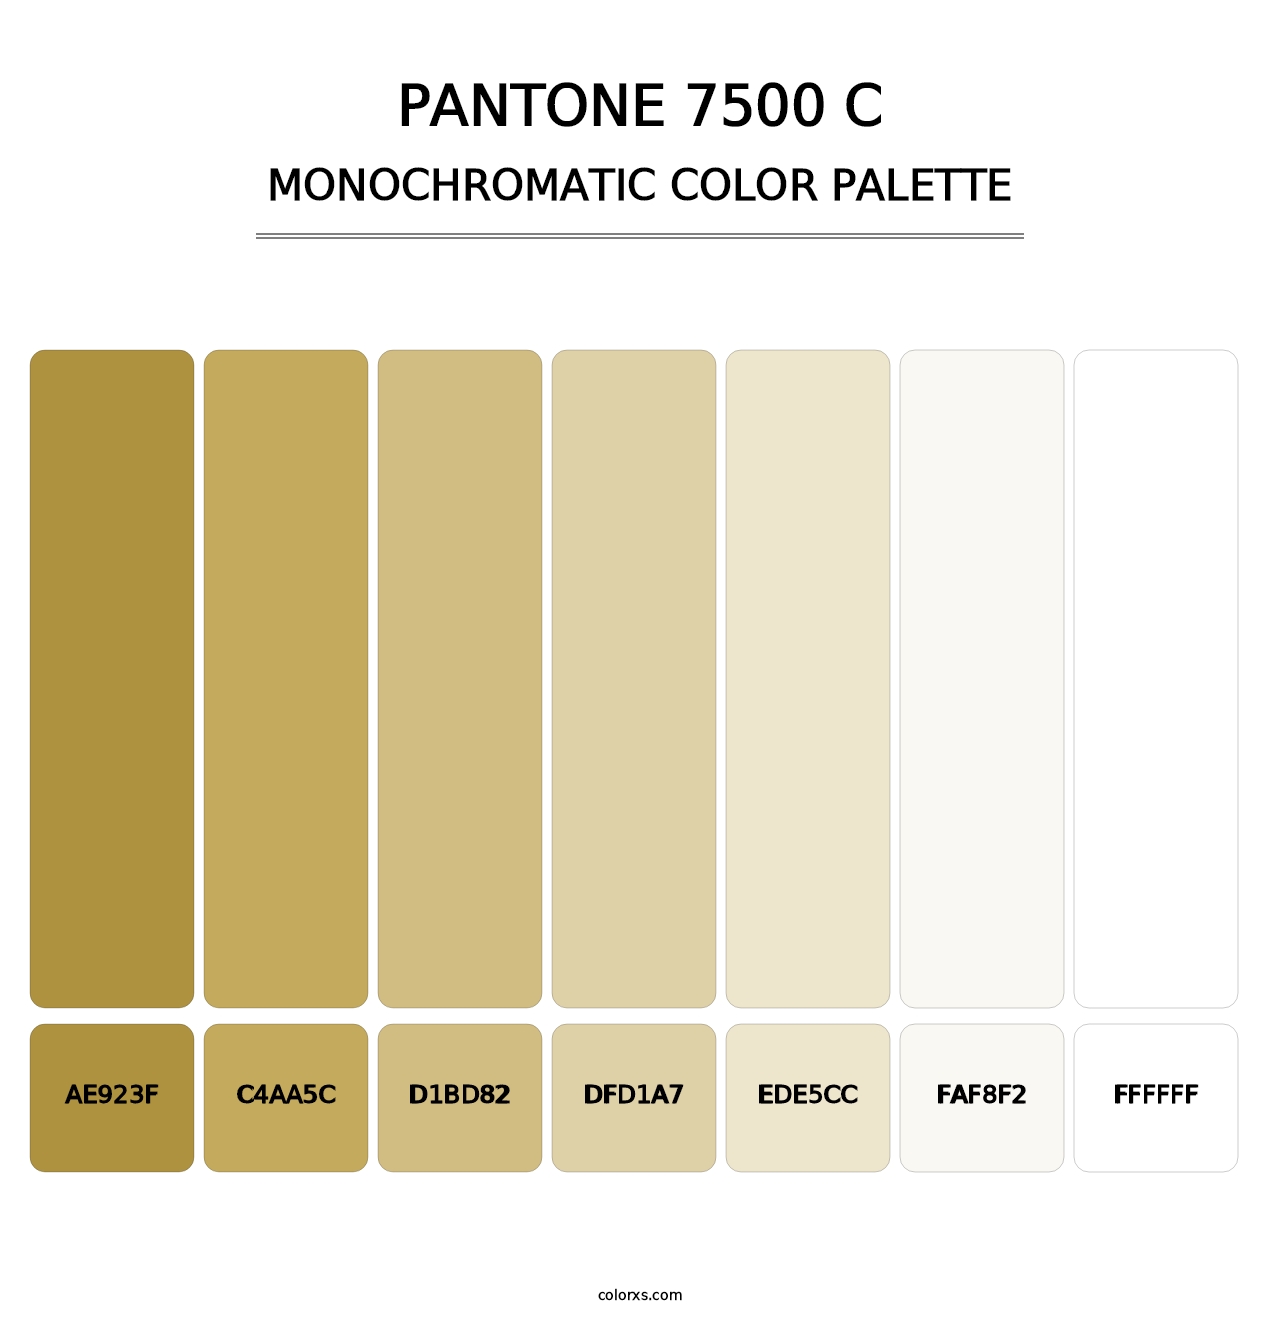 PANTONE 7500 C - Monochromatic Color Palette